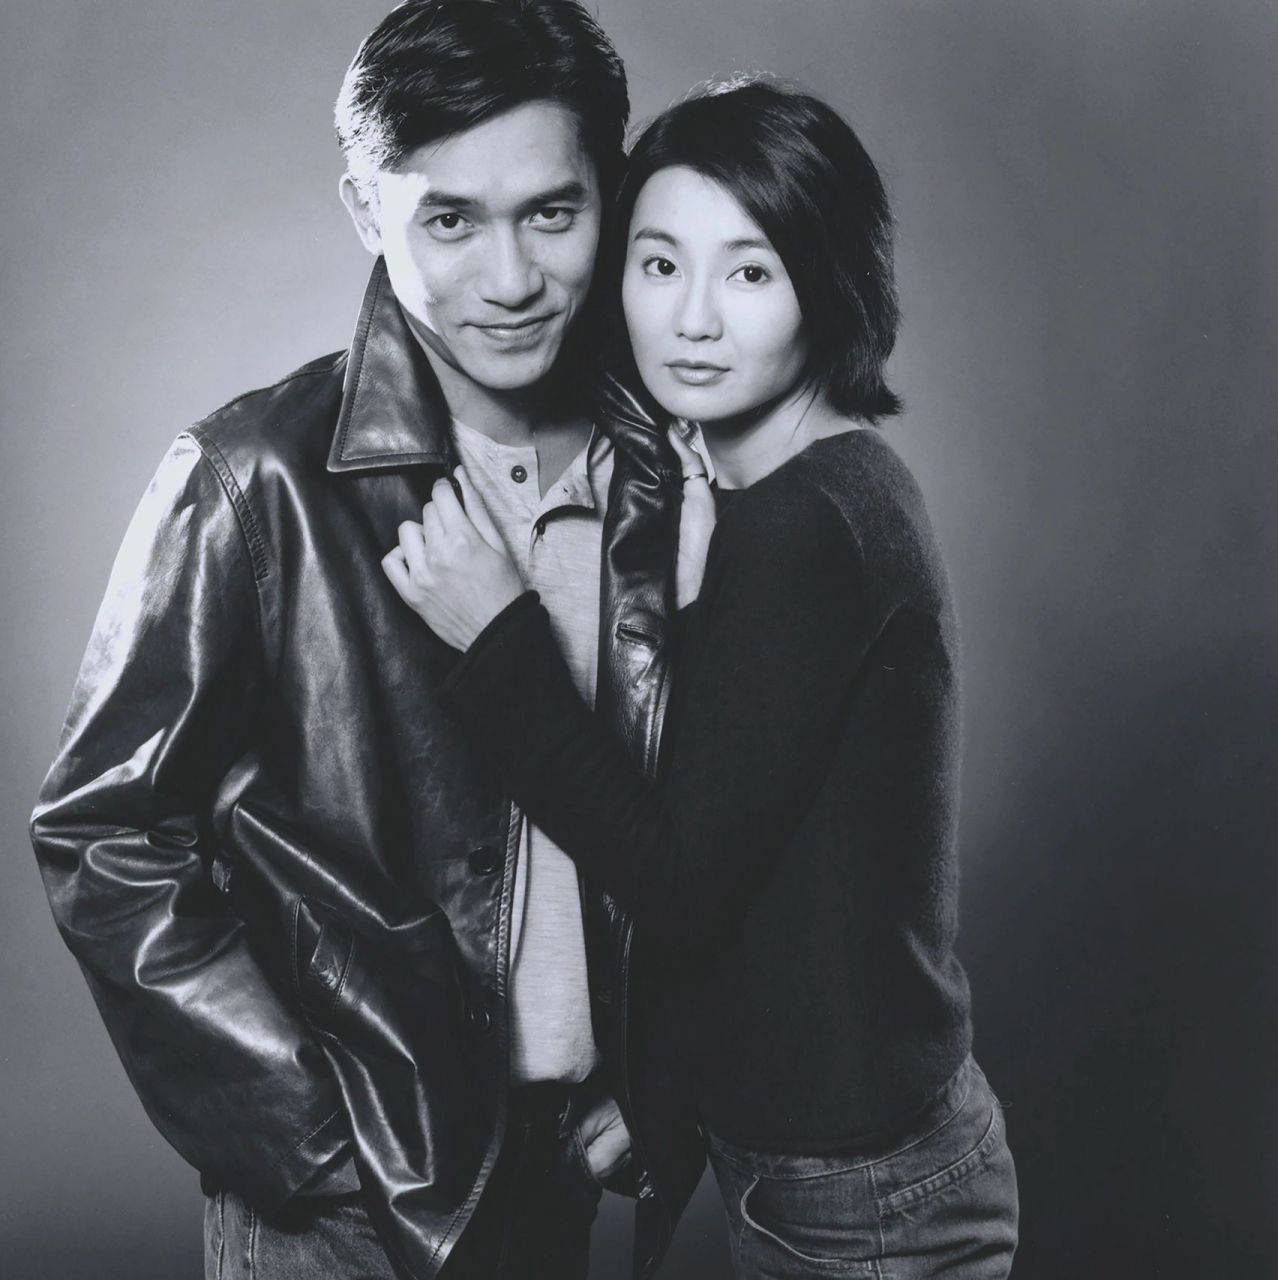 2000年《花样年华》宣传期,robin holland镜头下的梁朝伟与张曼玉